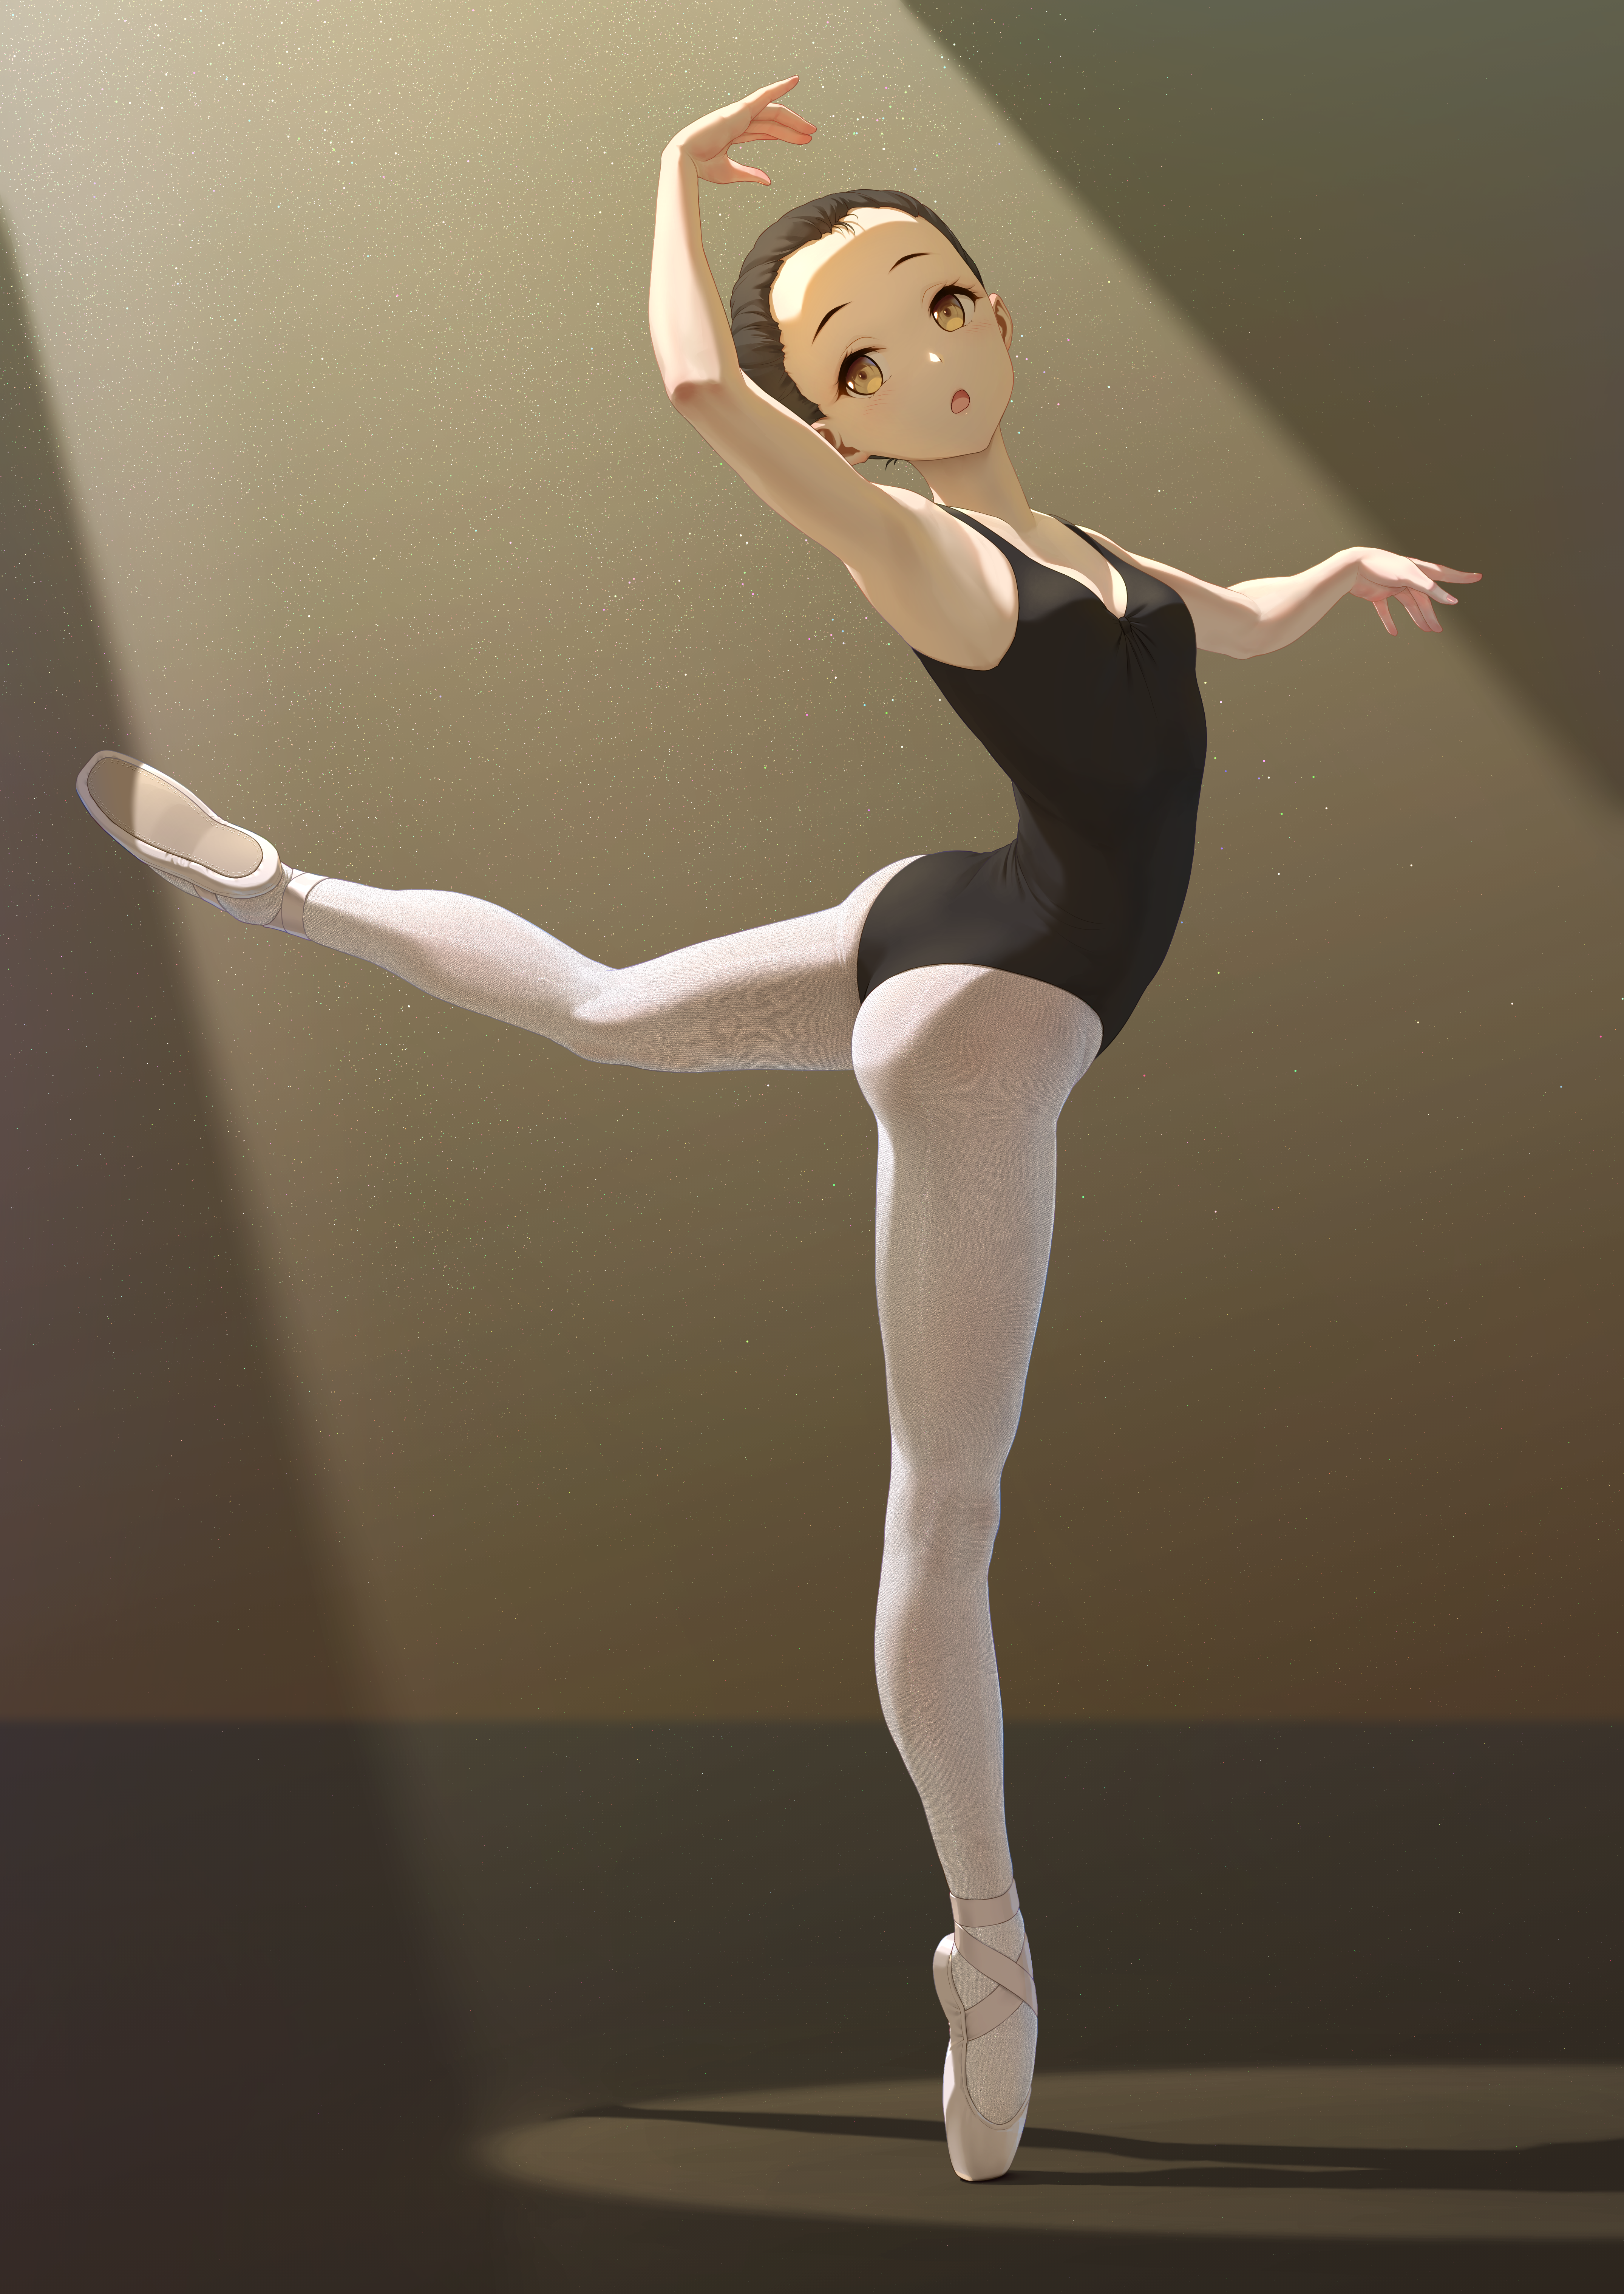 Wallpaper : anime girls, dancer, dancing, ballerina 3011x1693 - StepBro -  2099025 - HD Wallpapers - WallHere